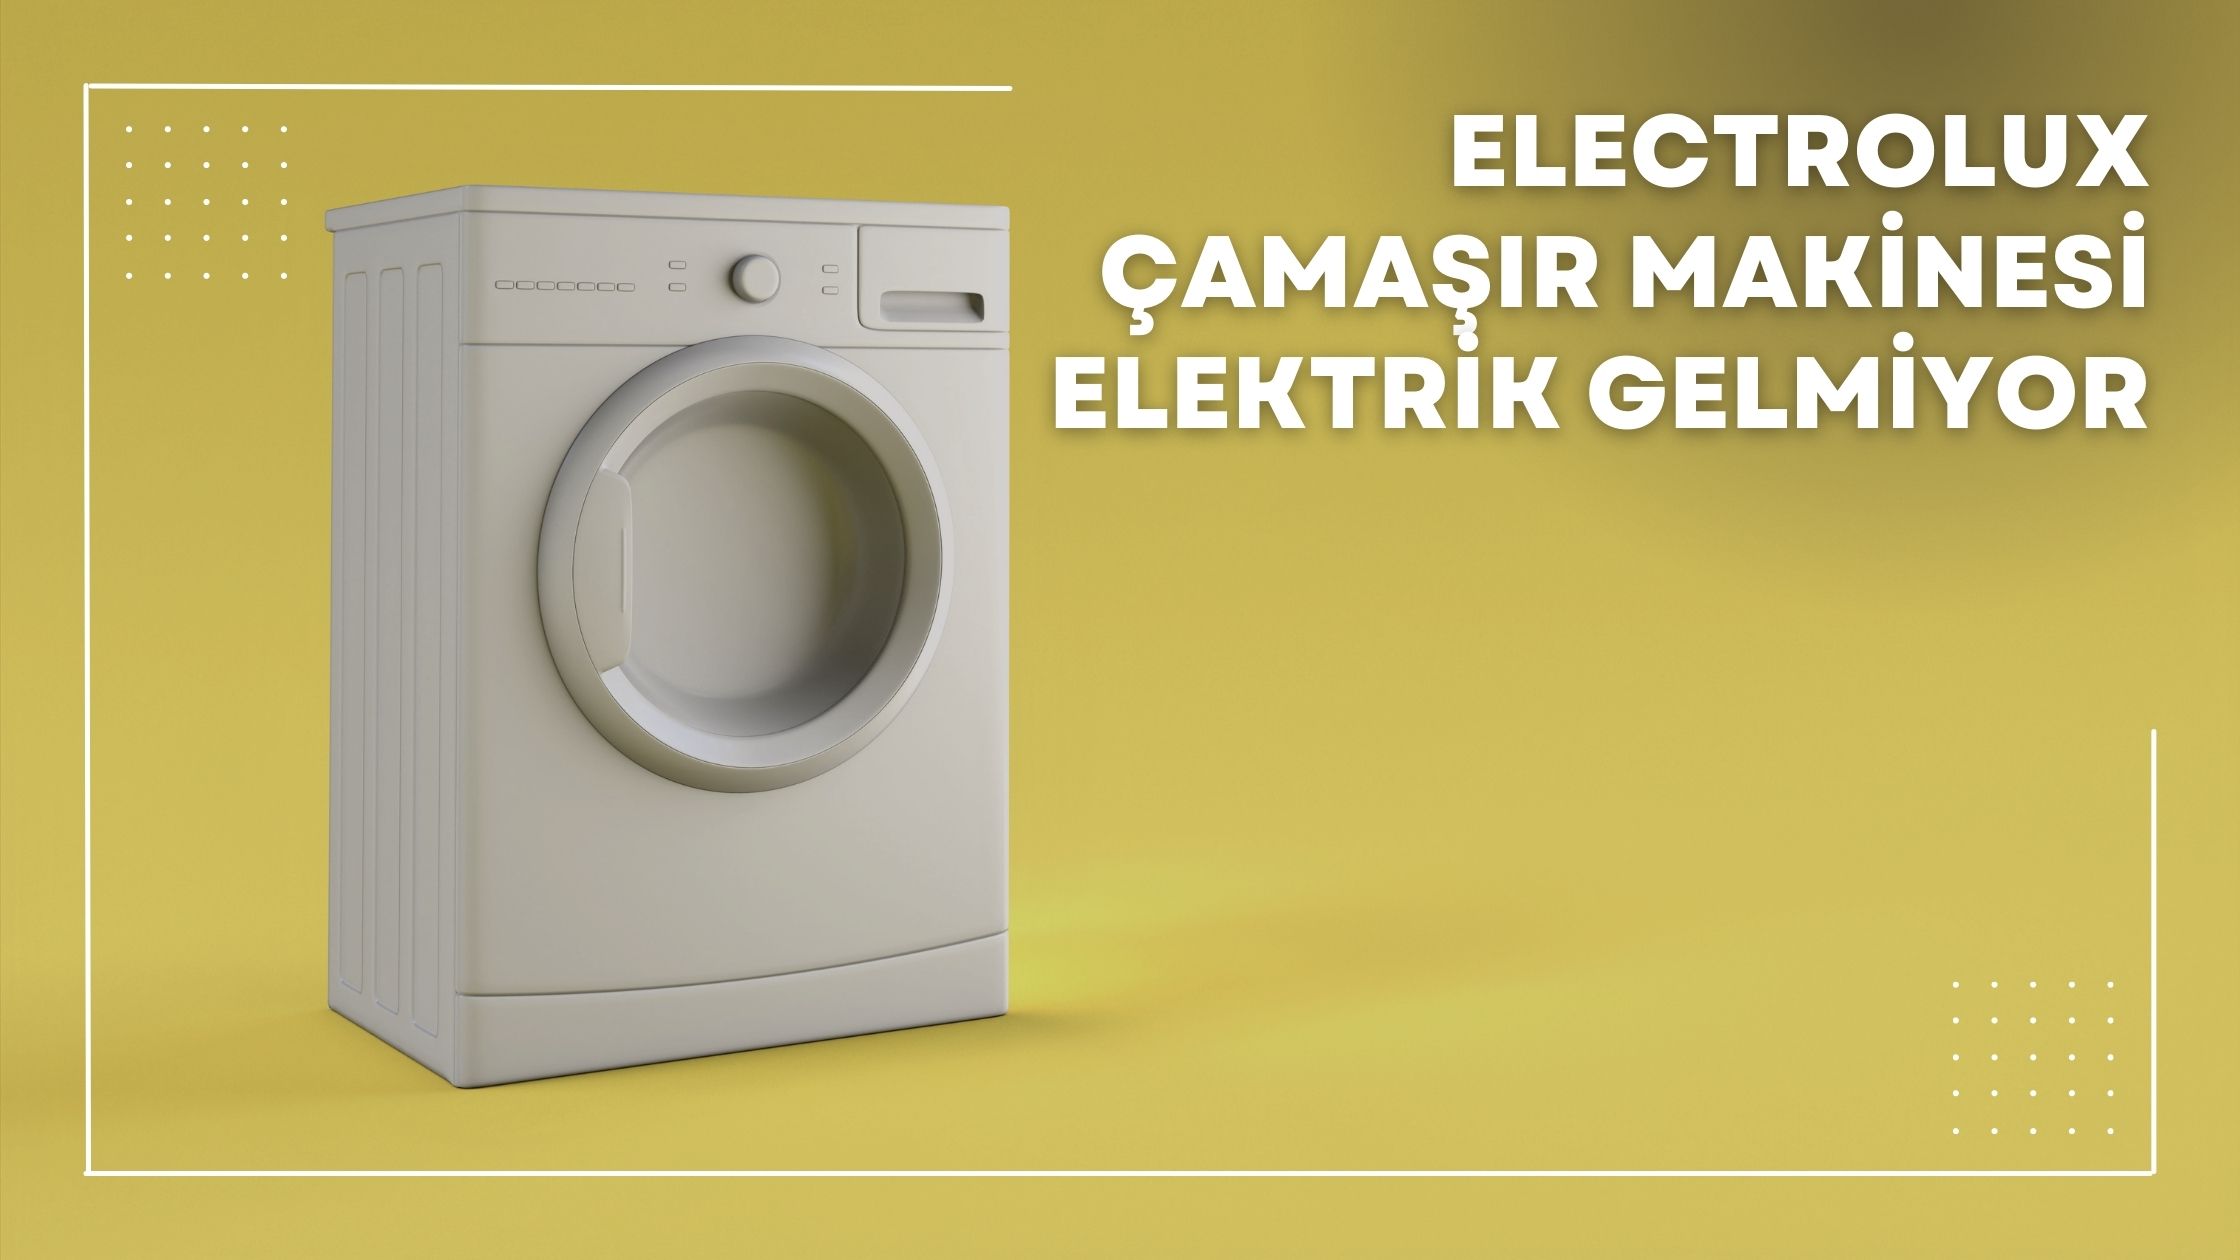 Electrolux Çamaşır Makinesi Elektrik Gelmiyor